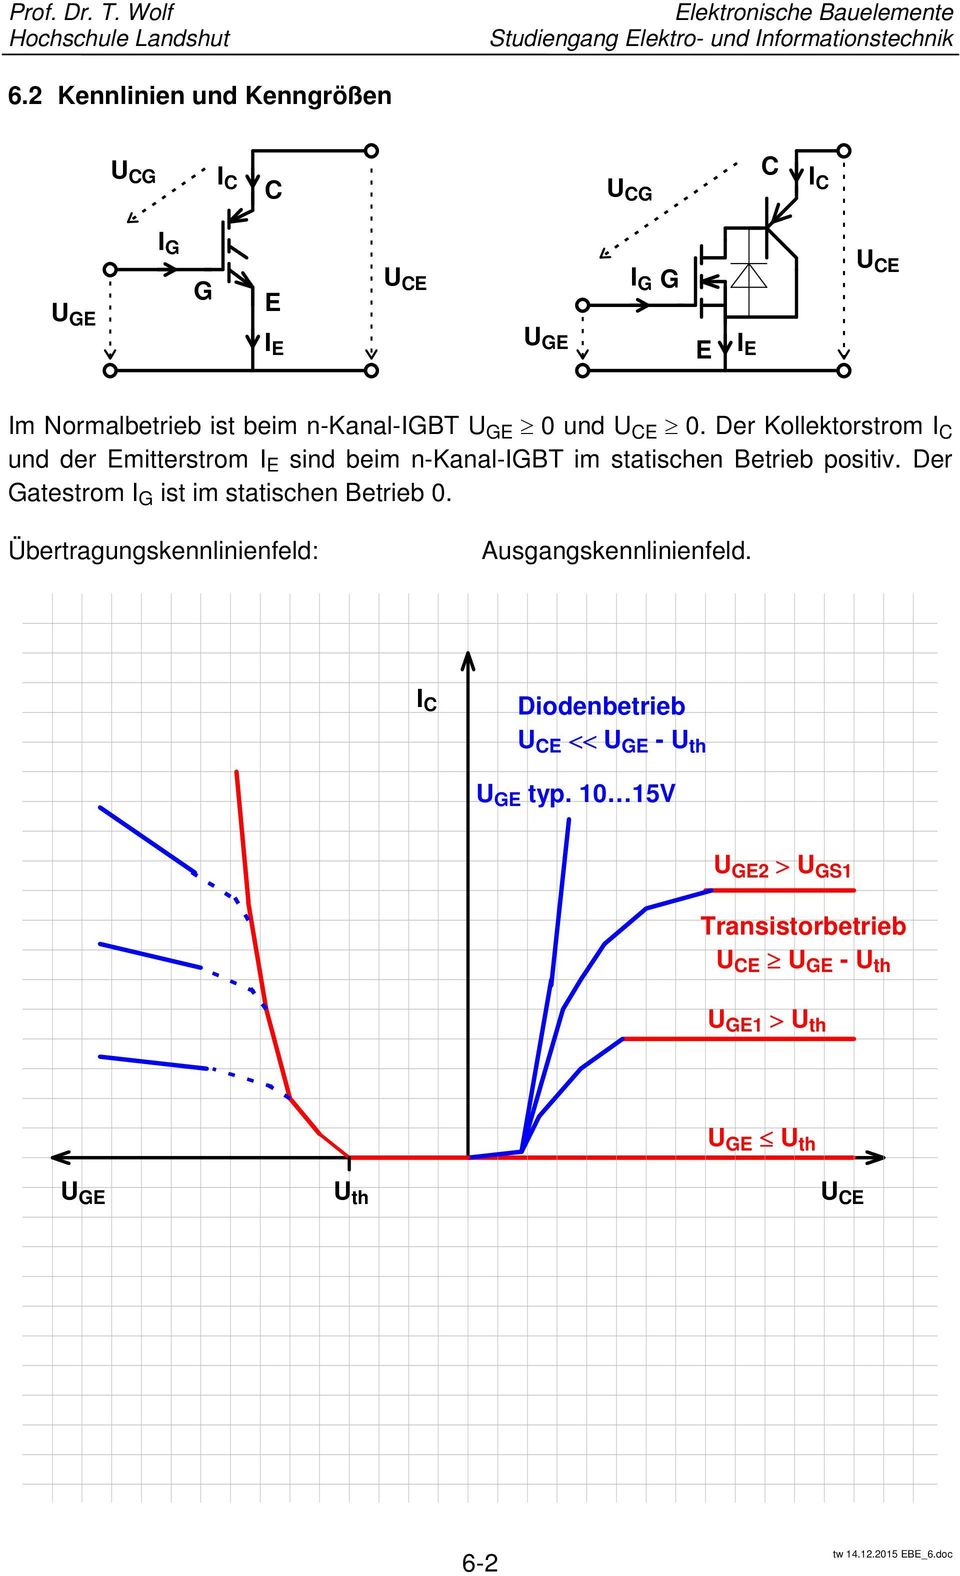 Der Kollektorstrom I und der Emitterstrom I E sind beim n-kanal-igbt im statischen Betrieb positiv.